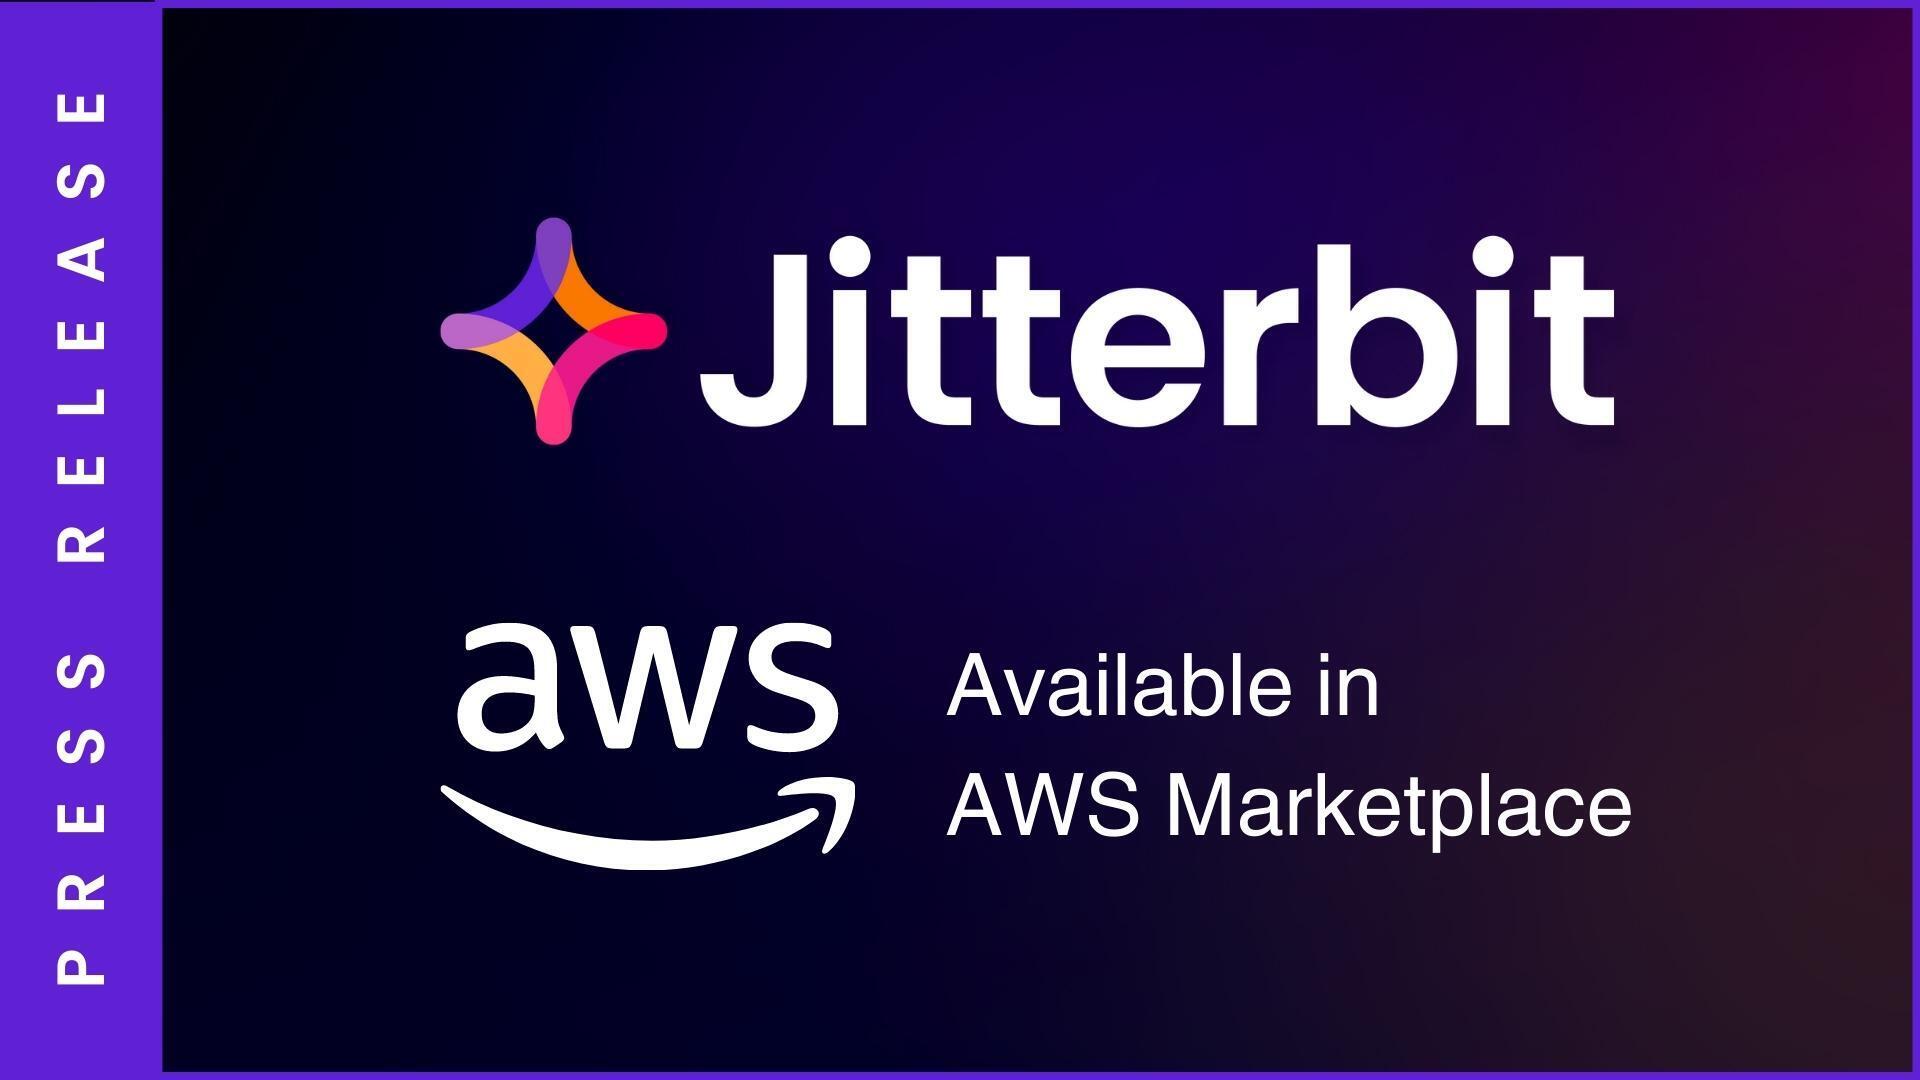 Press Release: Jitterbit AWS